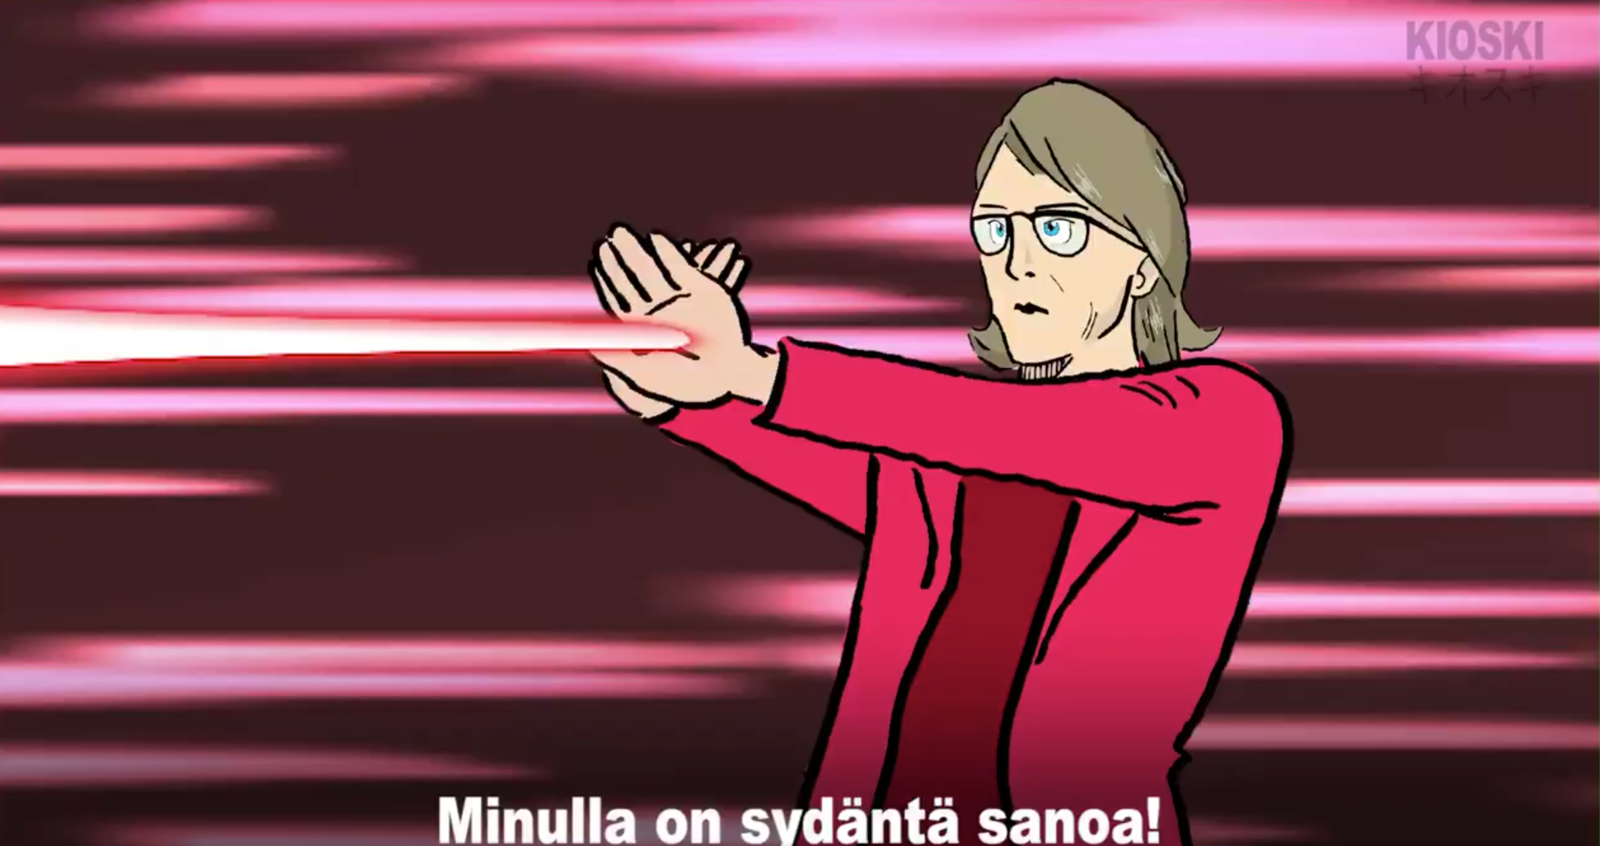 フィンランド国営放送が大統領選PRでつくったアニメがなぜか日本語ですごい